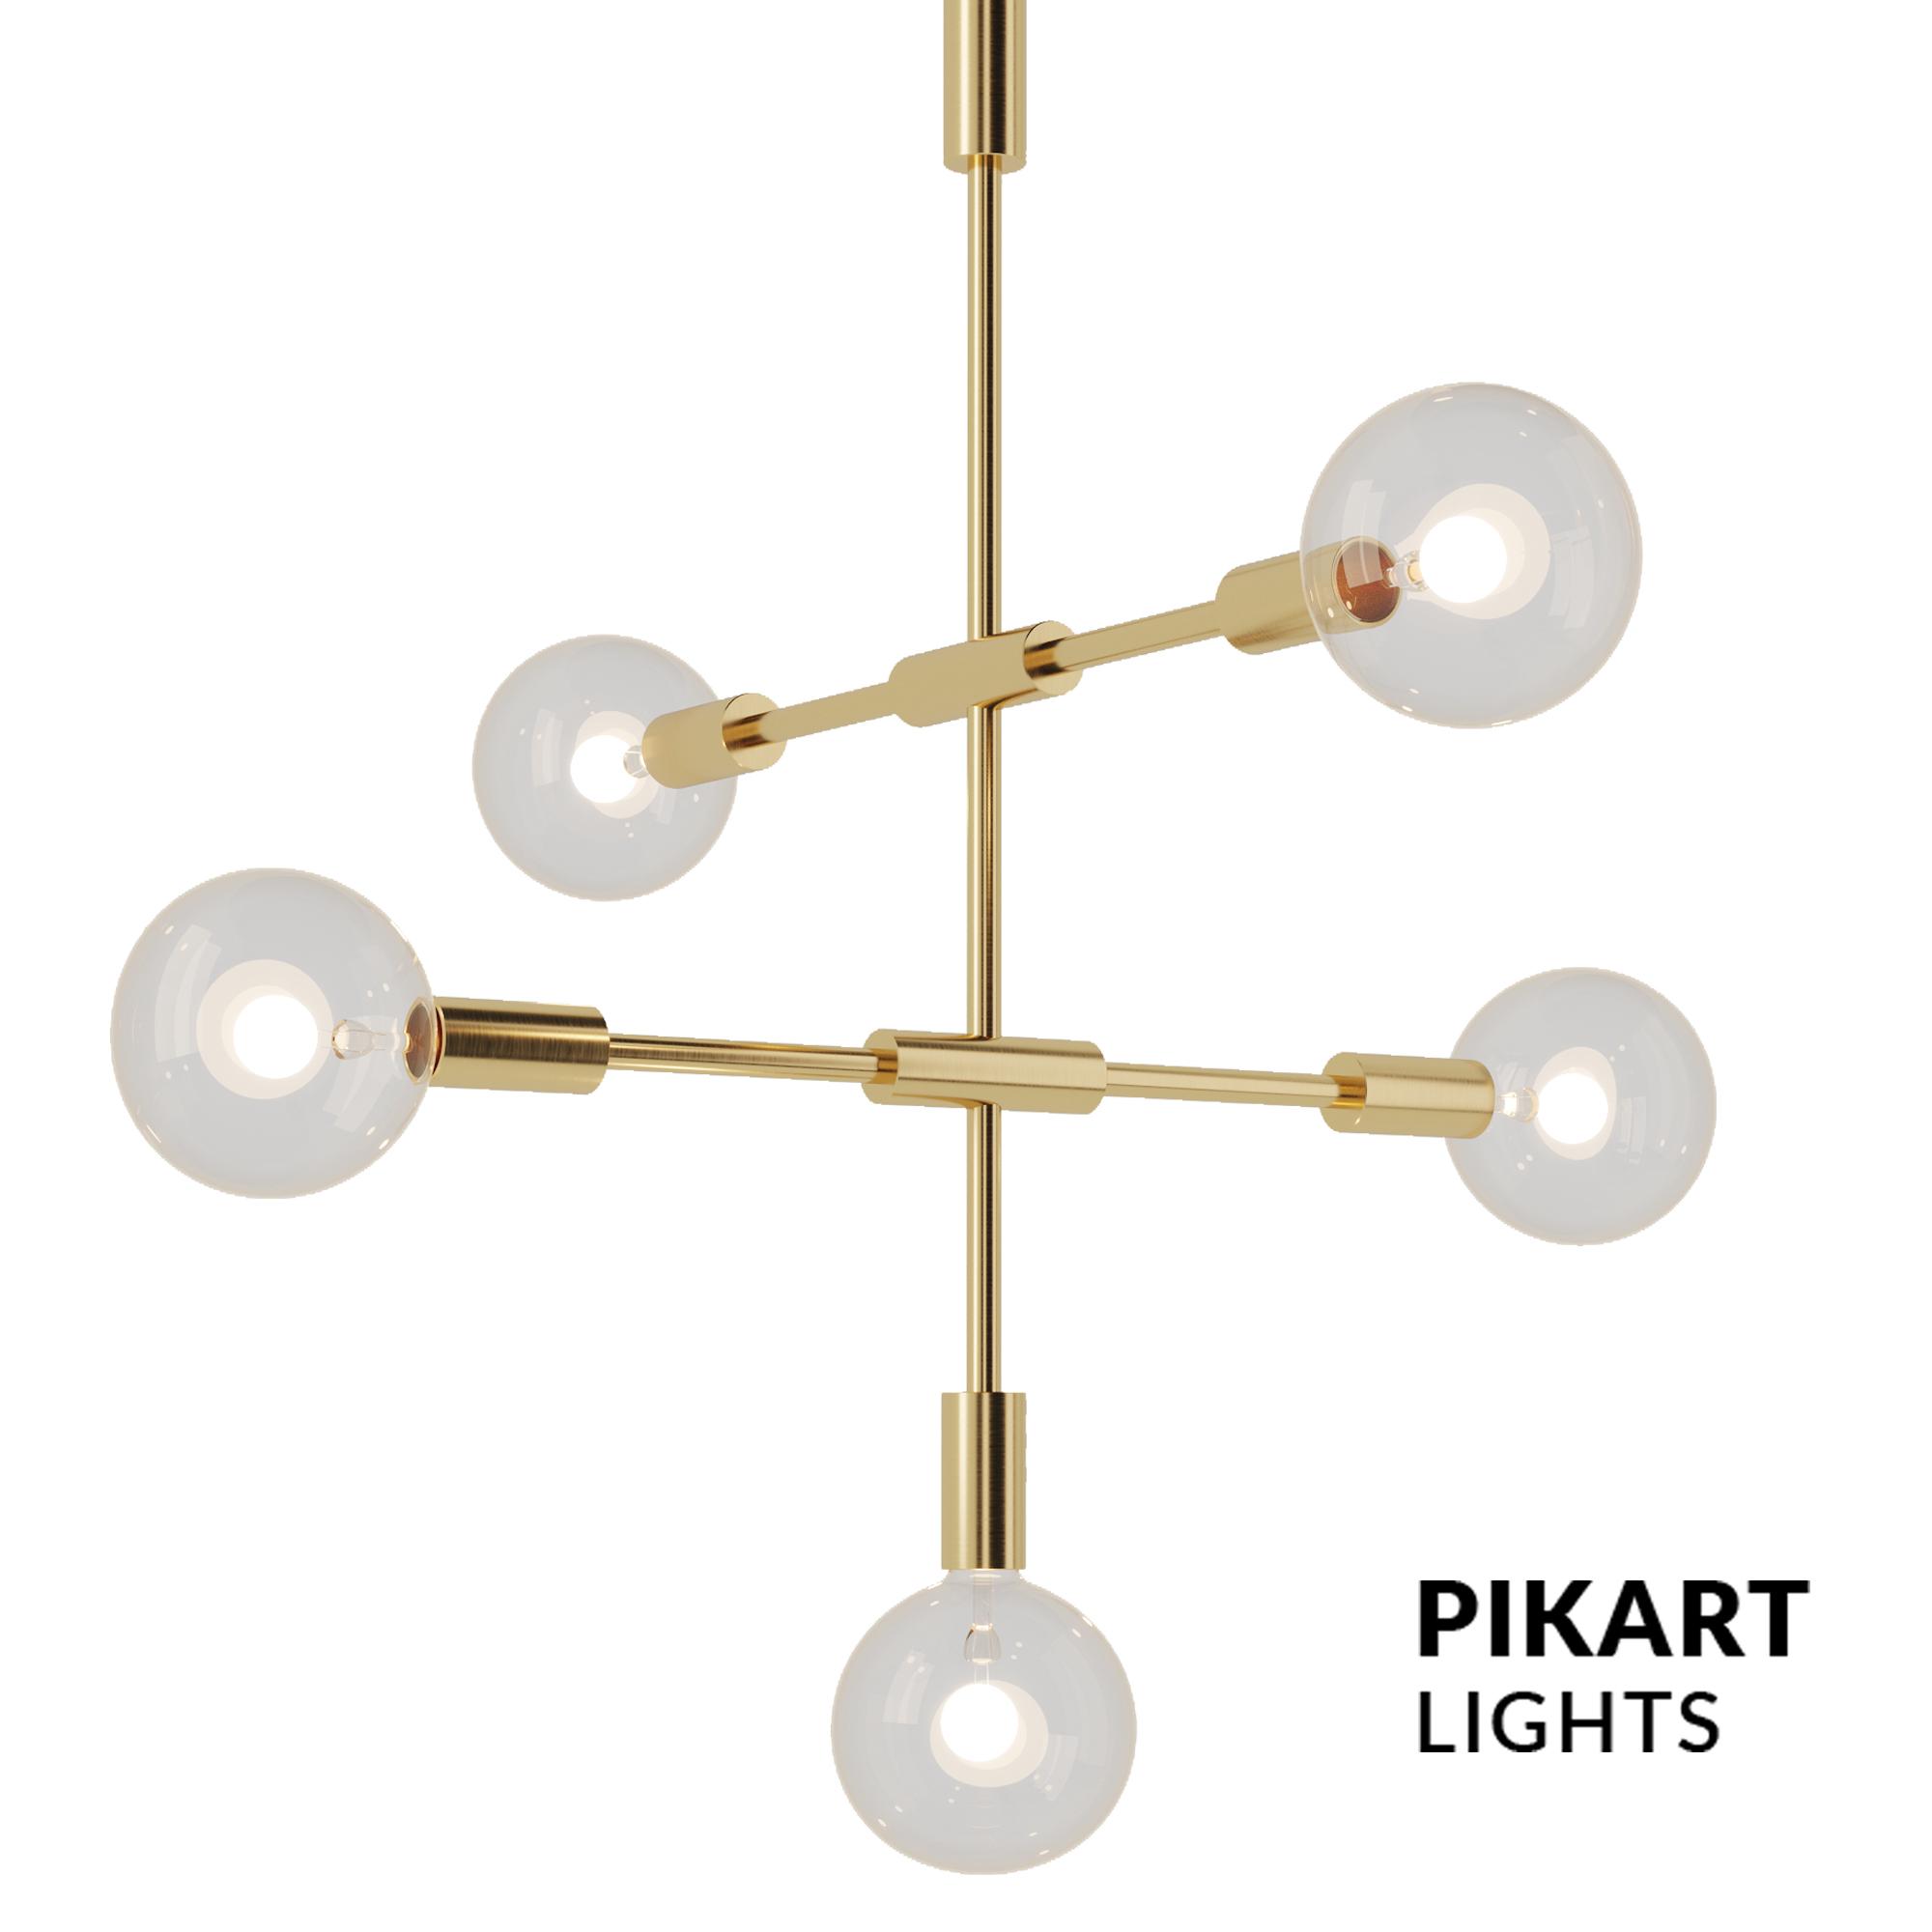 Mals lamp, SKU. 3961 by Pikartlight 3d model